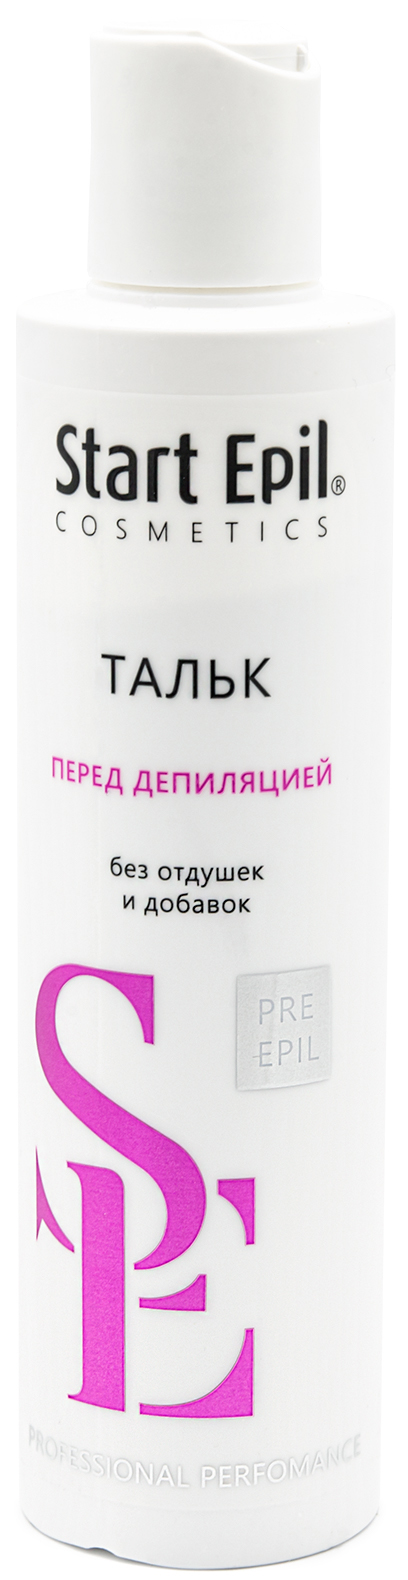 Купить Aravia Professional Start Epil Тальк без отдушек и добавок, 120 гр (Aravia Professional, Spa Депиляция), Россия